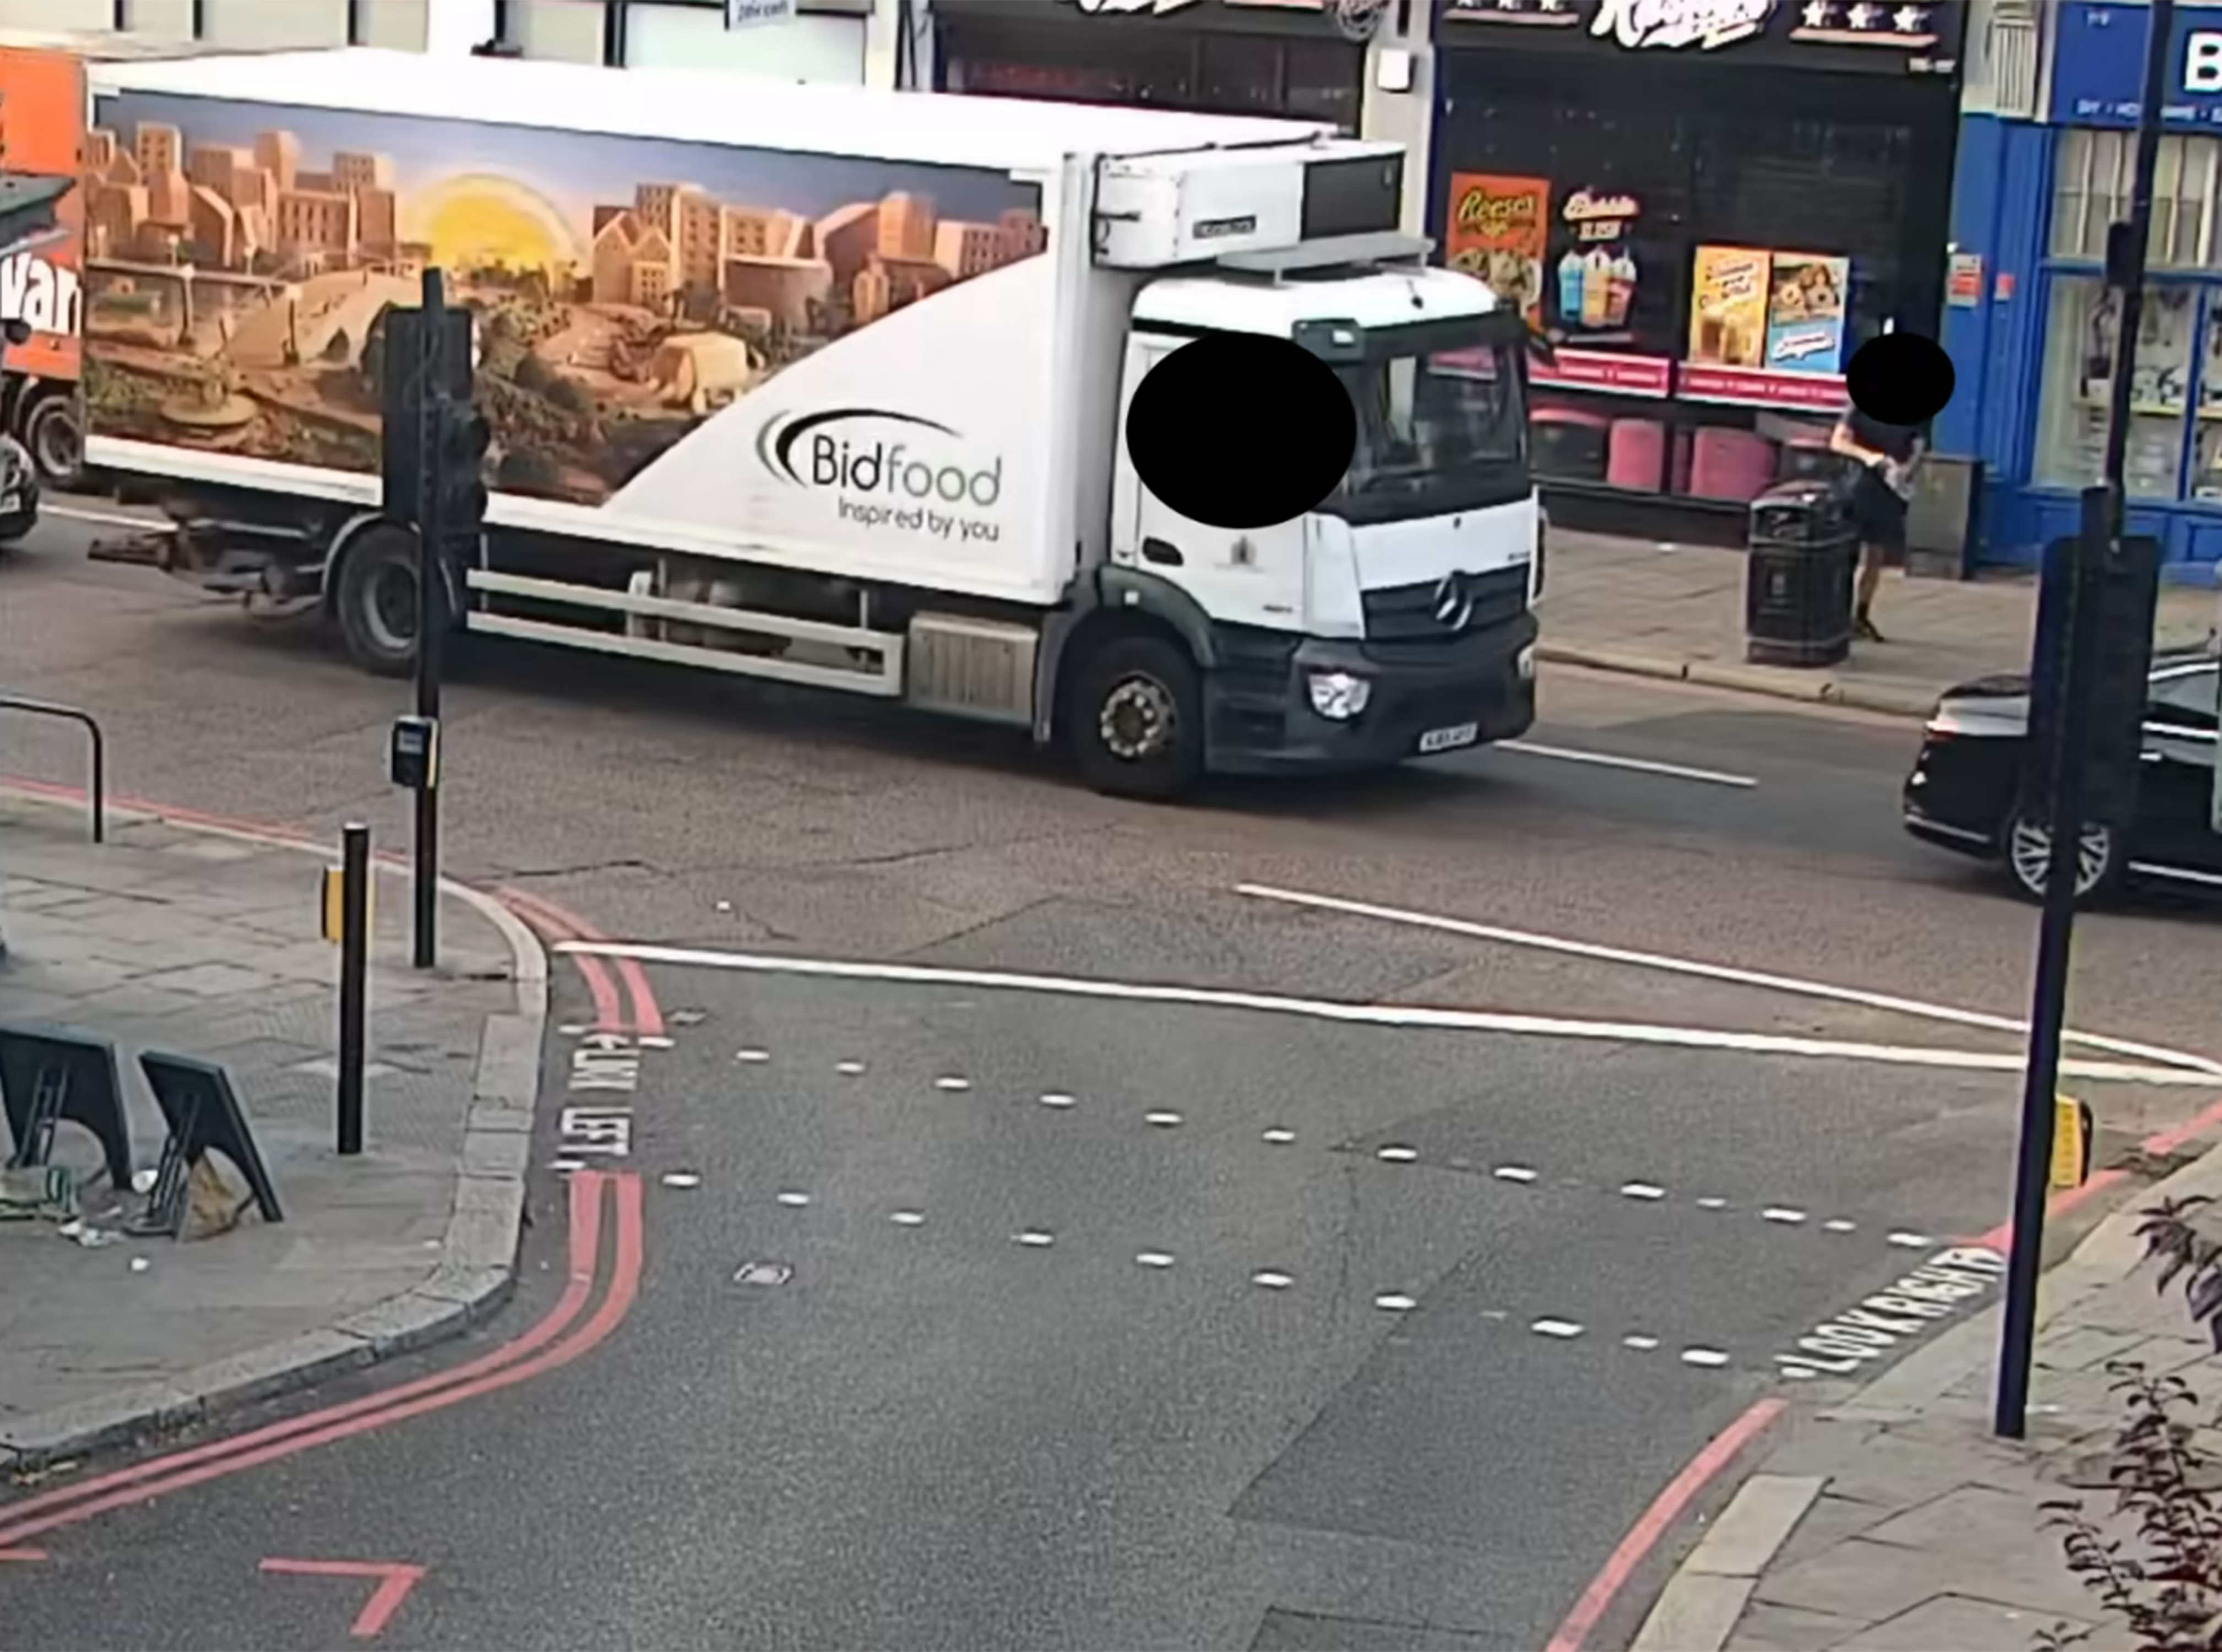 Die Polizei veröffentlichte ein Video des Lebensmittellieferwagens auf dem Weg zum HMP Wandsworth im Südwesten Londons